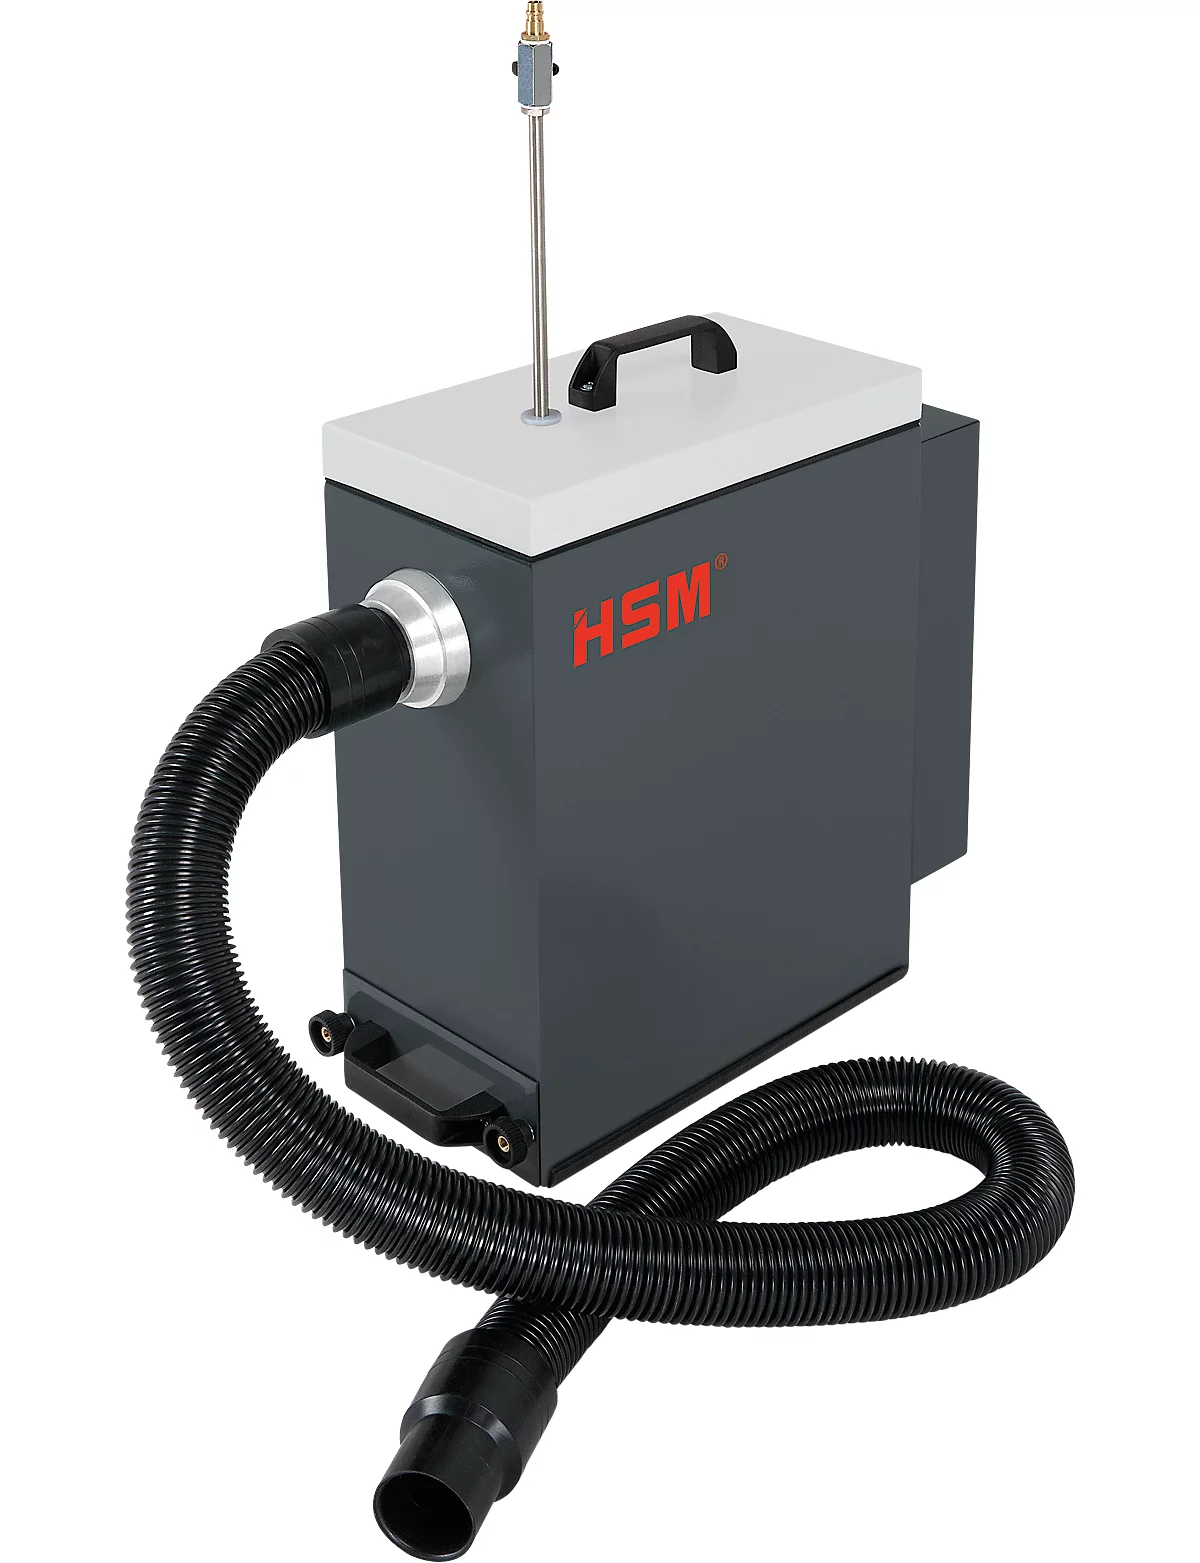 Entstauber HSM DE 1-8, für Verpackungspolstermaschine HSM ProfiPack P425 mit Staubabsaugungs-Anschluss, Volumen 1 l, 1 kW, Staubklasse M, schwarz-grau